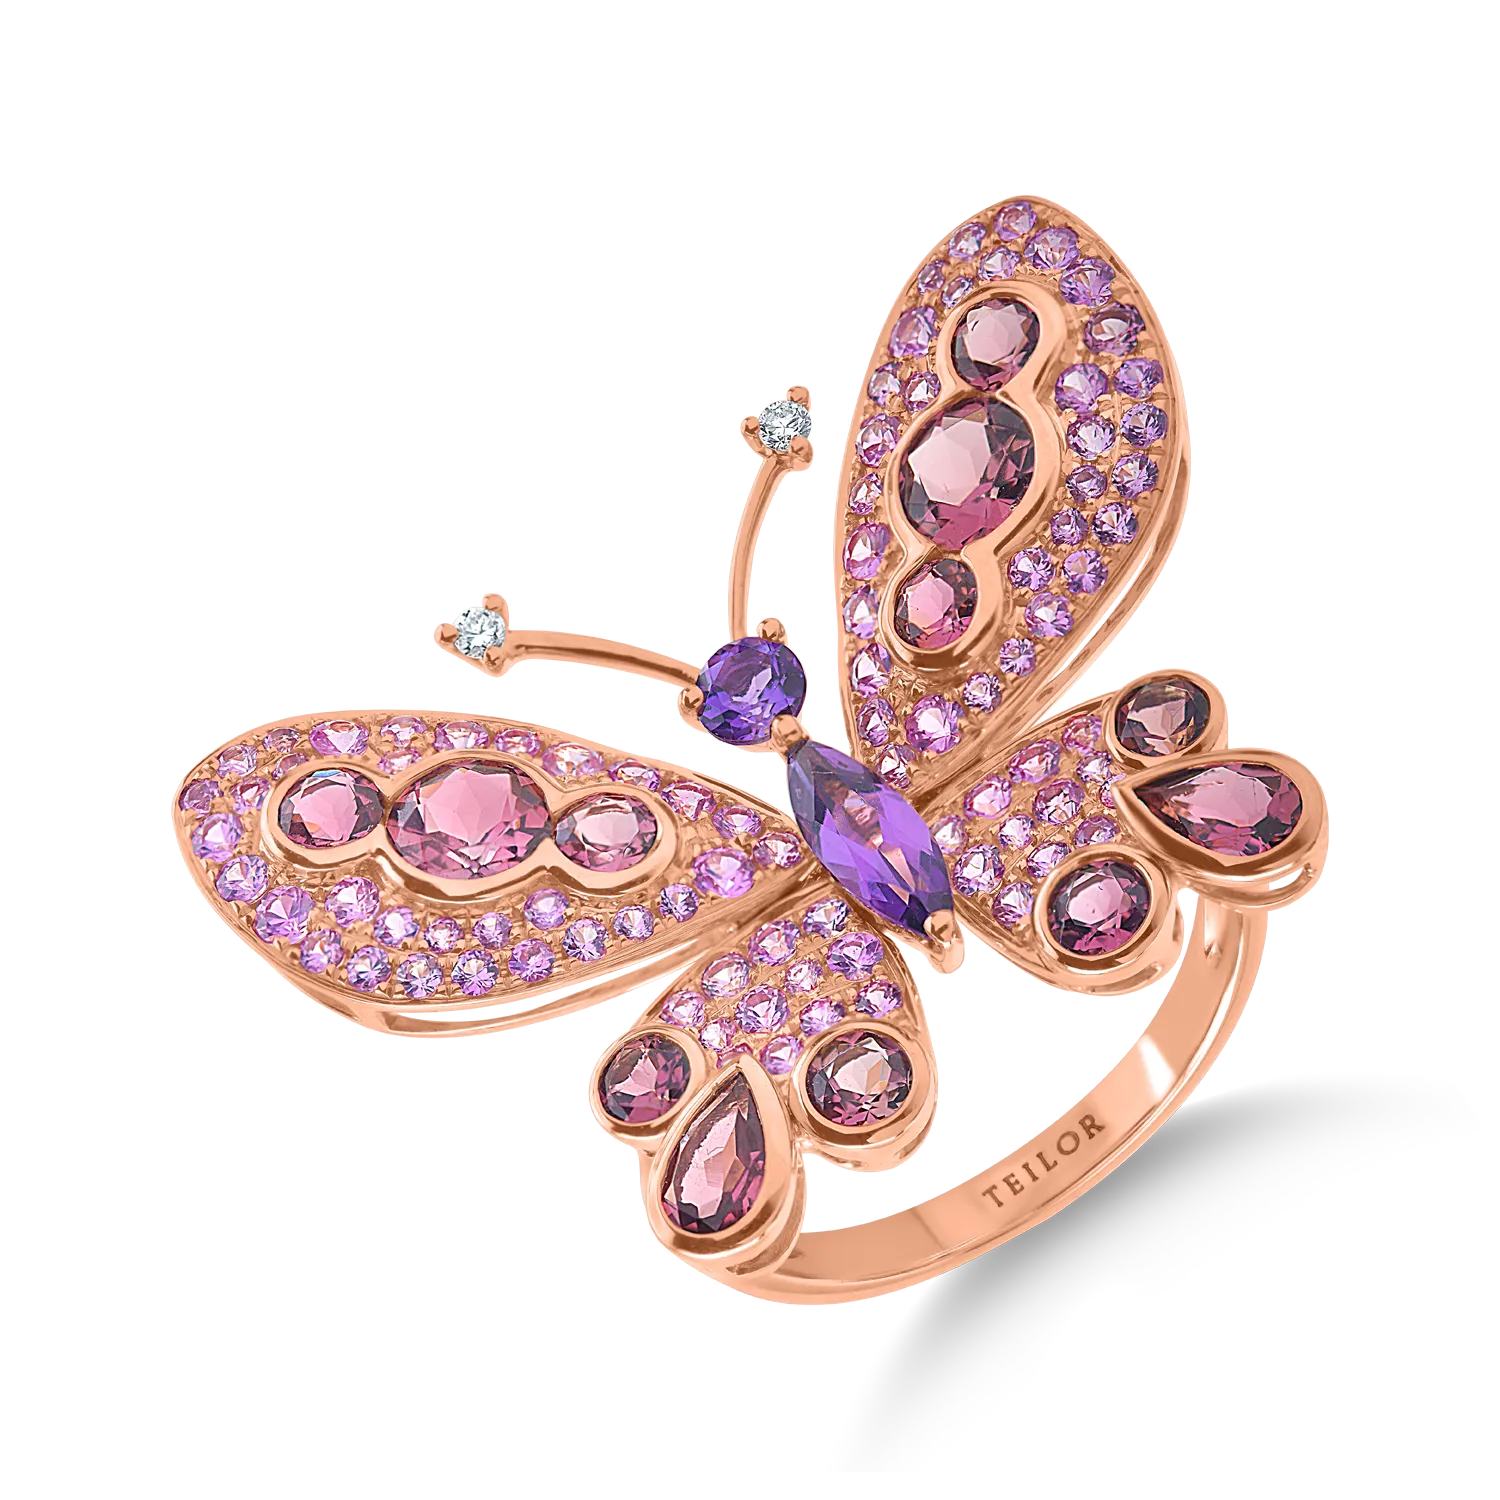 Rózsarany pillangógyűrű 4.29 ct-os drágakövekkel és féldrágakövekkel